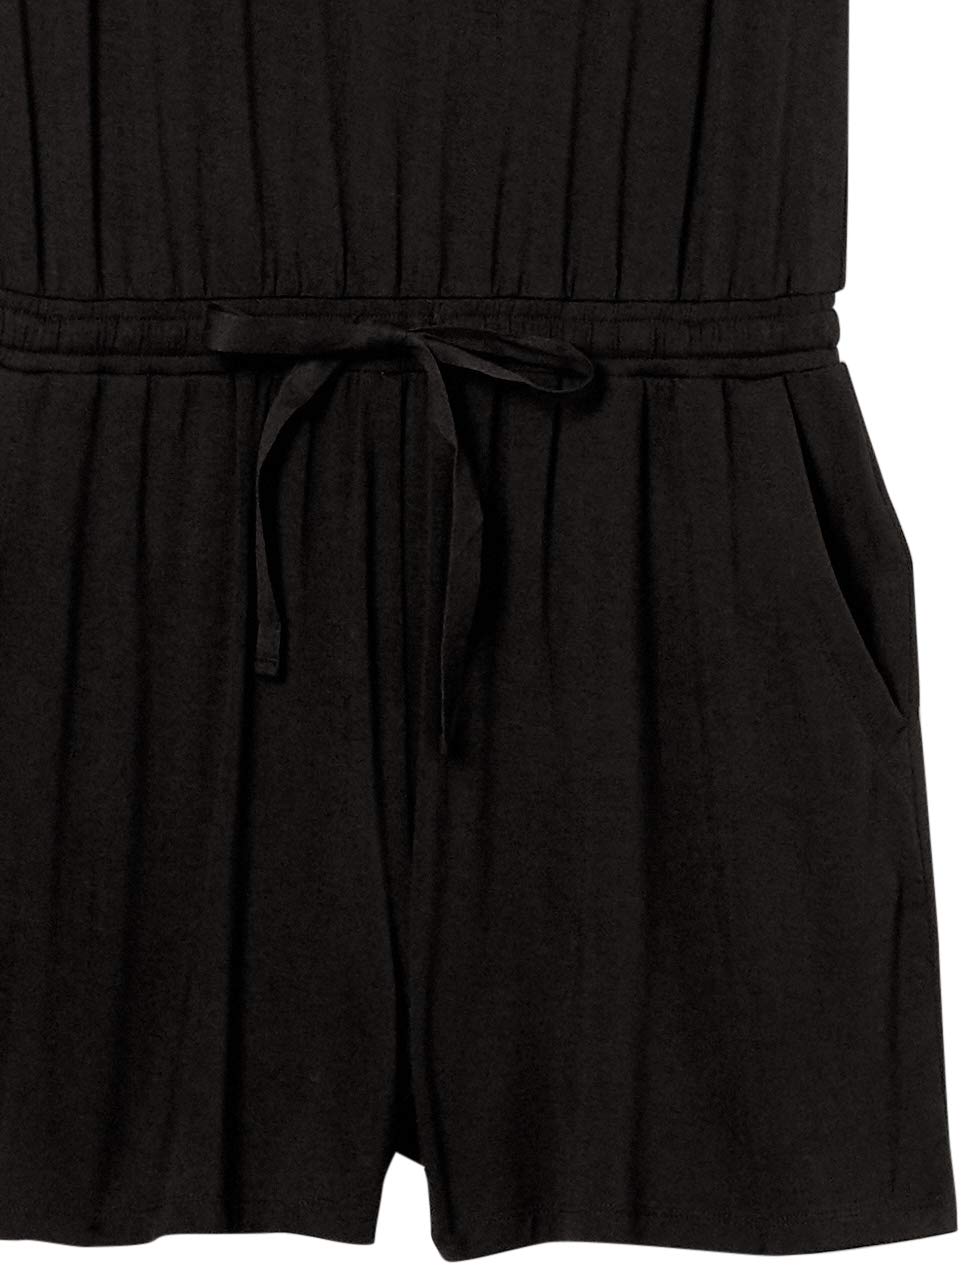 Amazon Essentials Women's Short-Sleeve Scoop Neck Romper